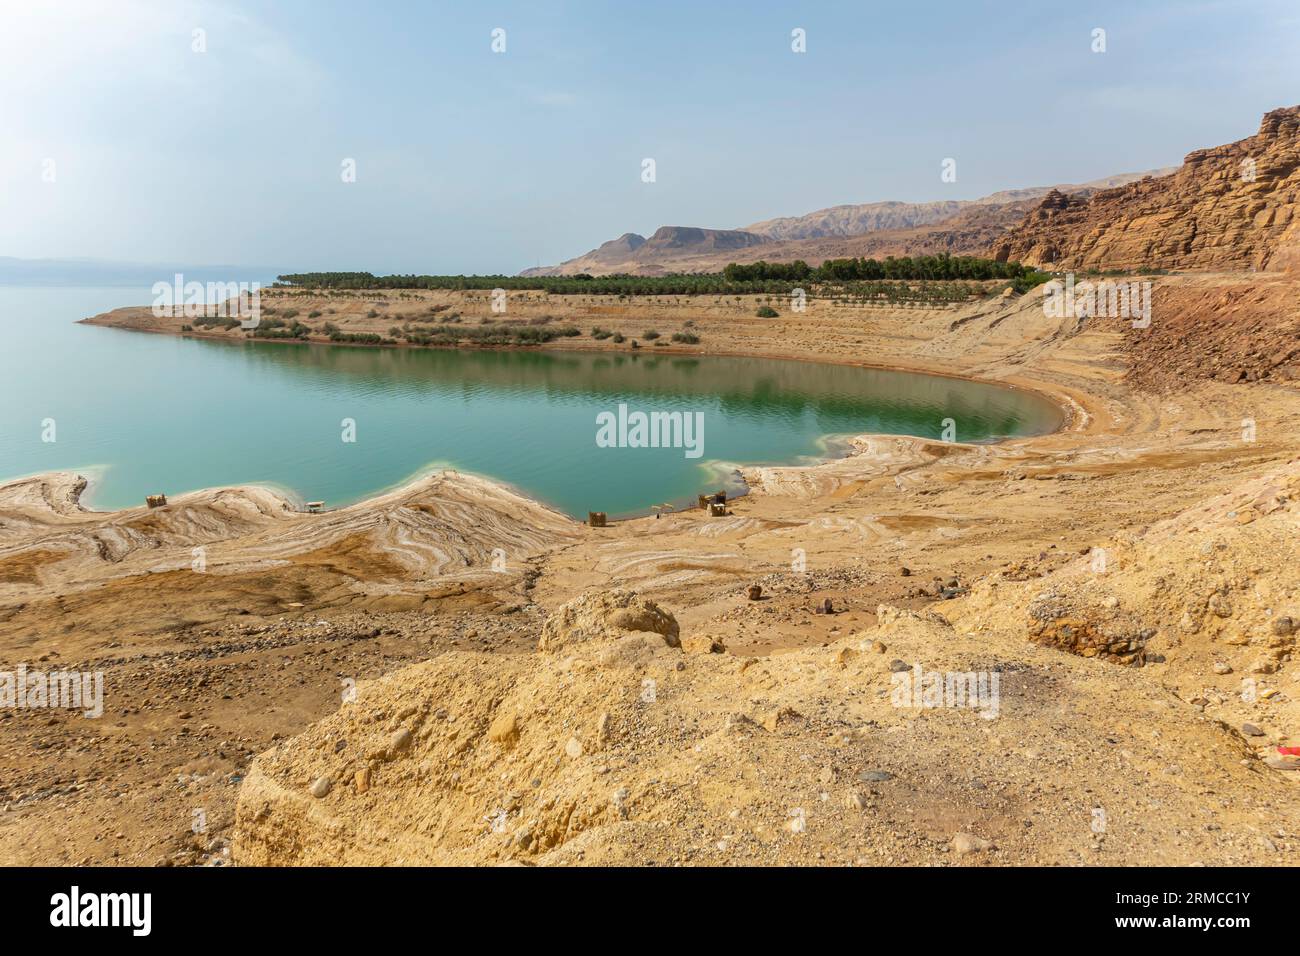 Sosta turistica di rocce salate sulla costa del Mar morto in Giordania Foto Stock